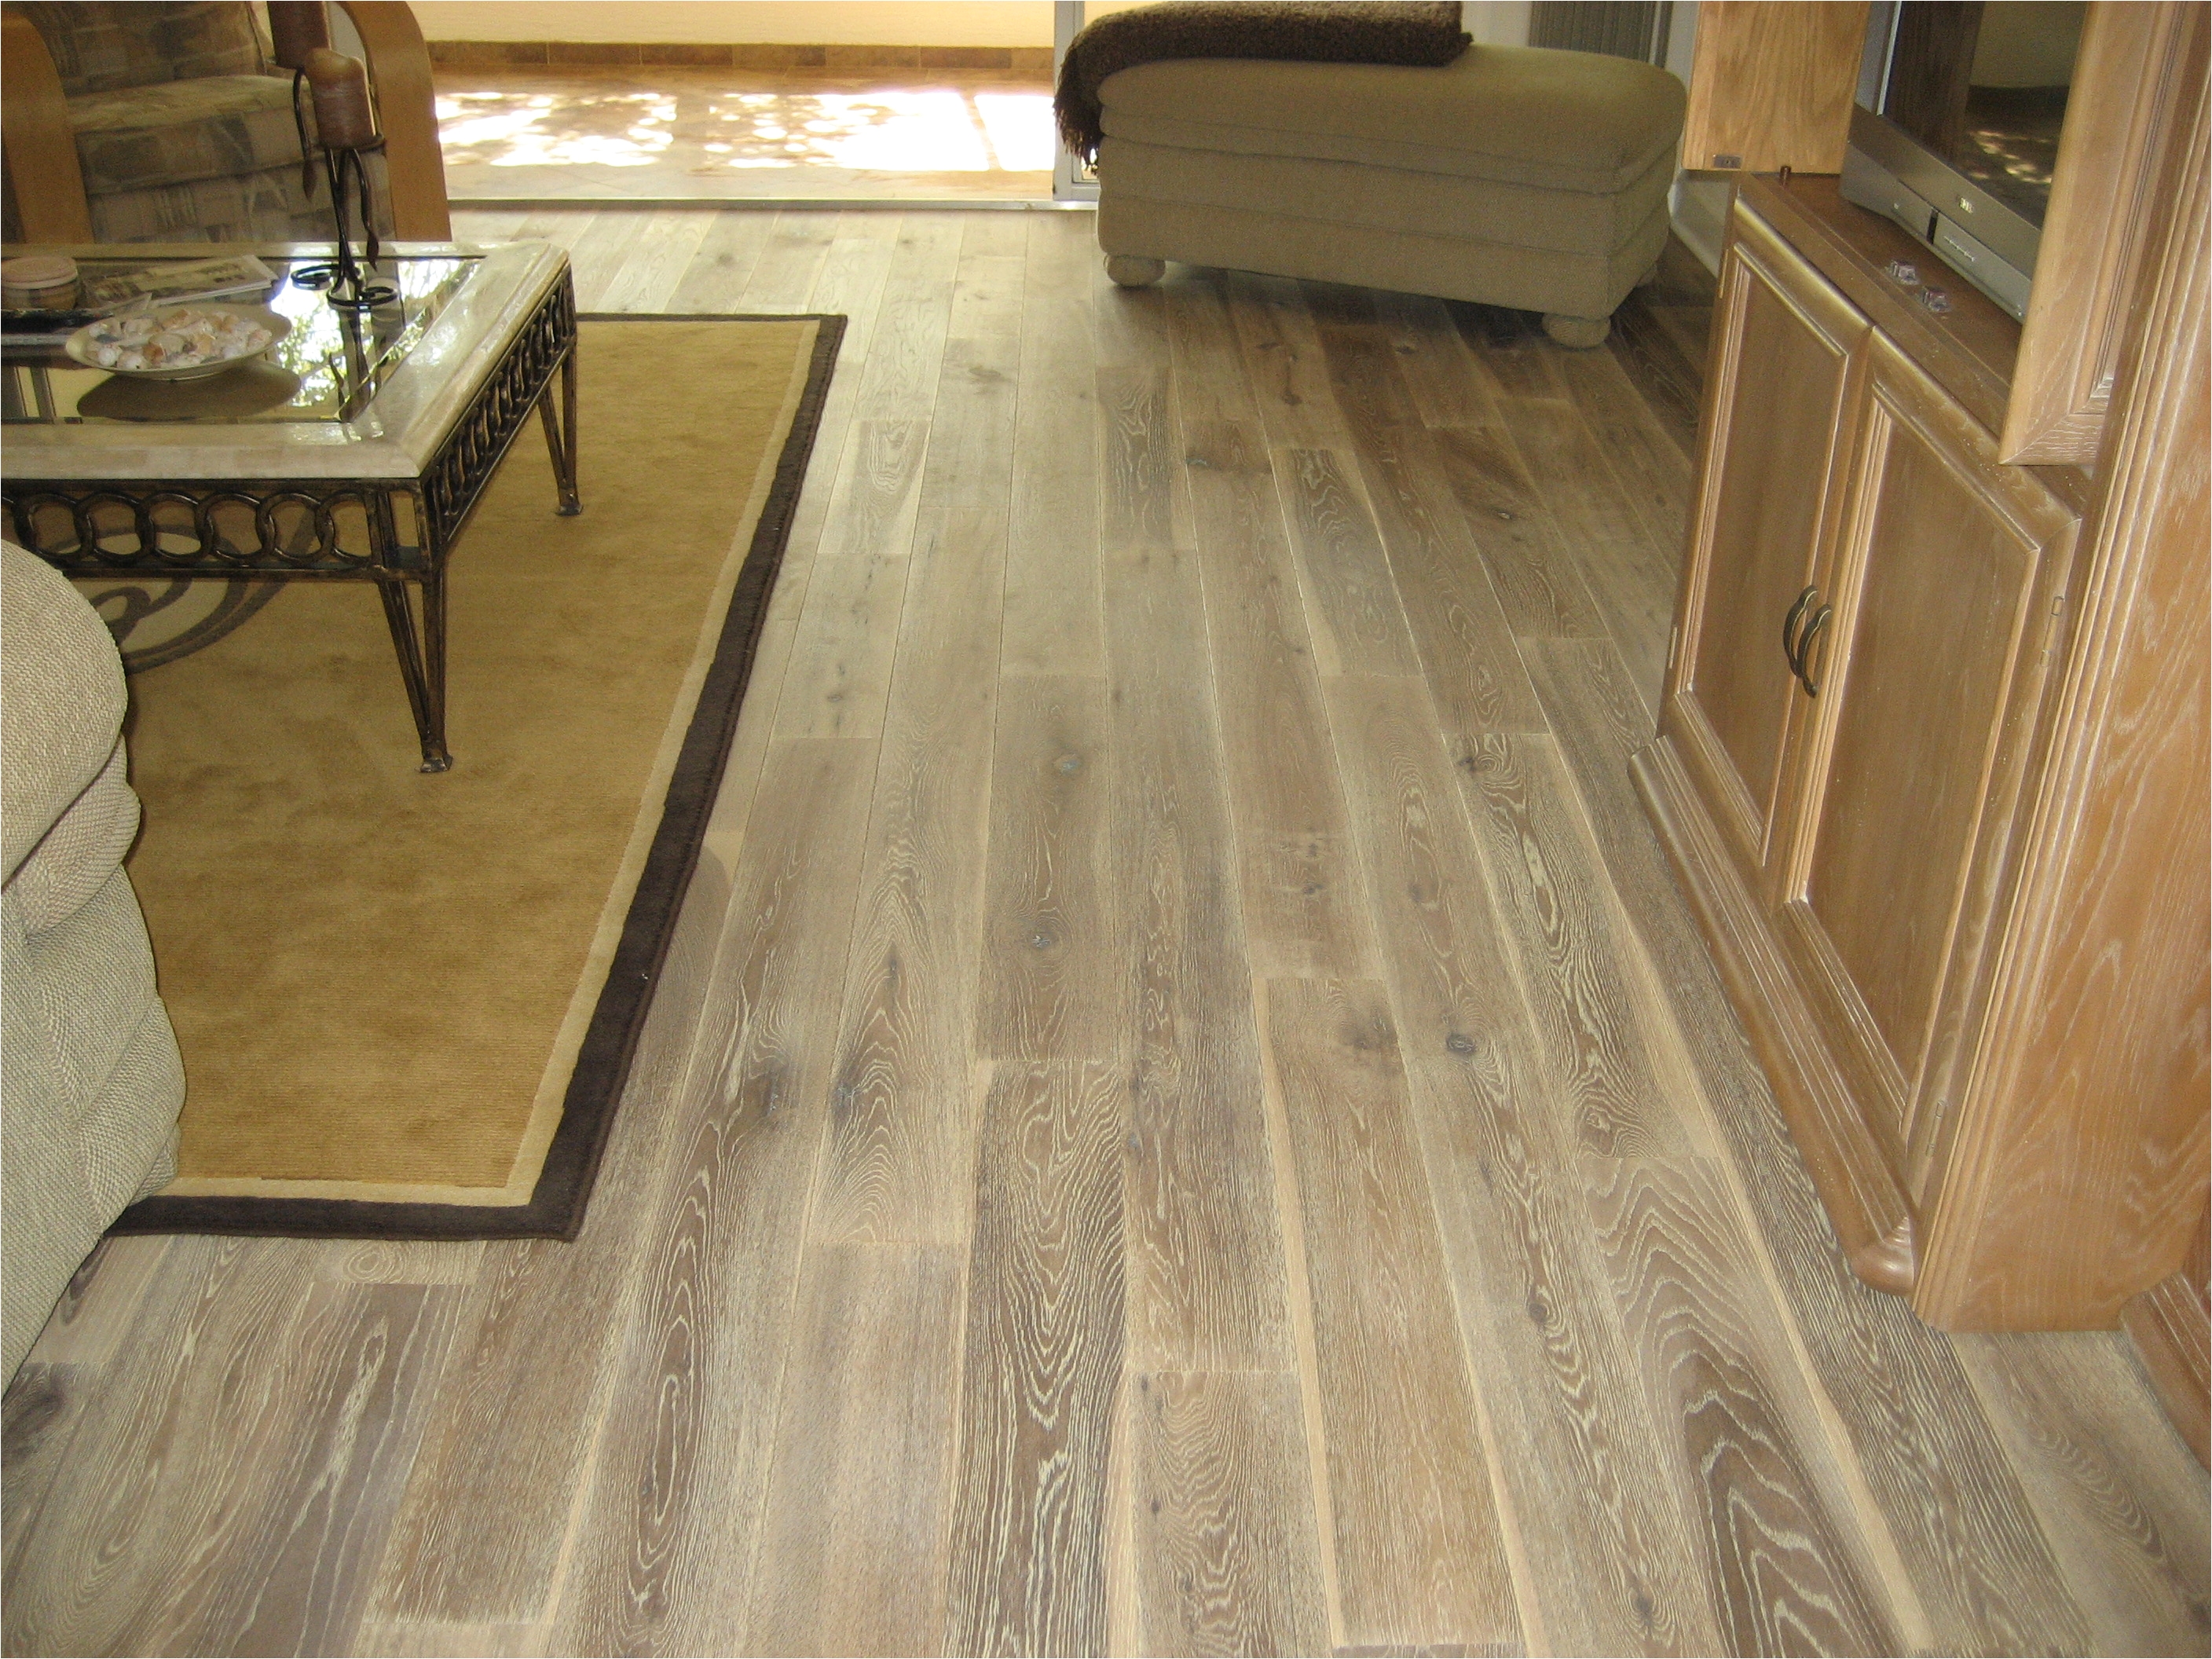 wood floor ceramic tiles floor ceramic tile wood floor flooring lowes from big in modern